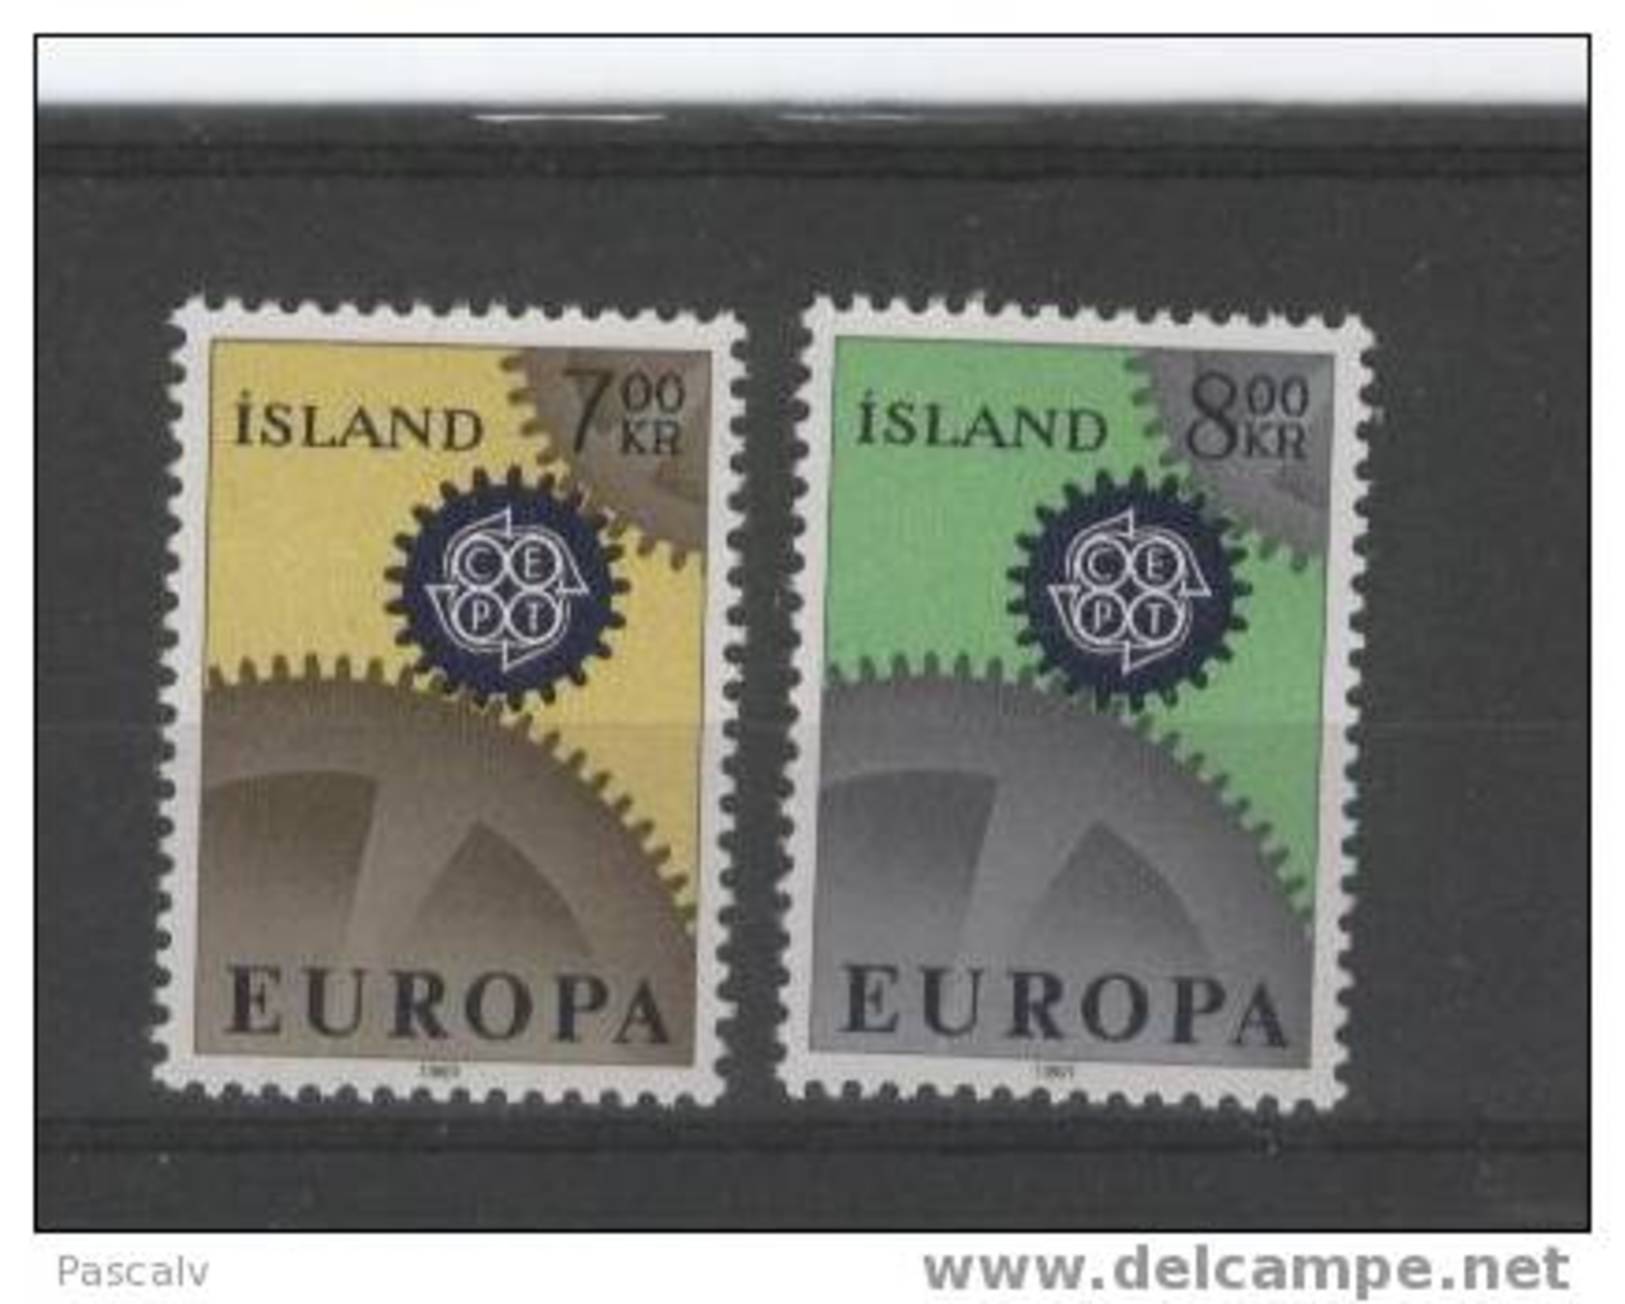 ISLANDE EUROPA 1967 Yvert 364 / 365 Neufs ** MNH - Neufs